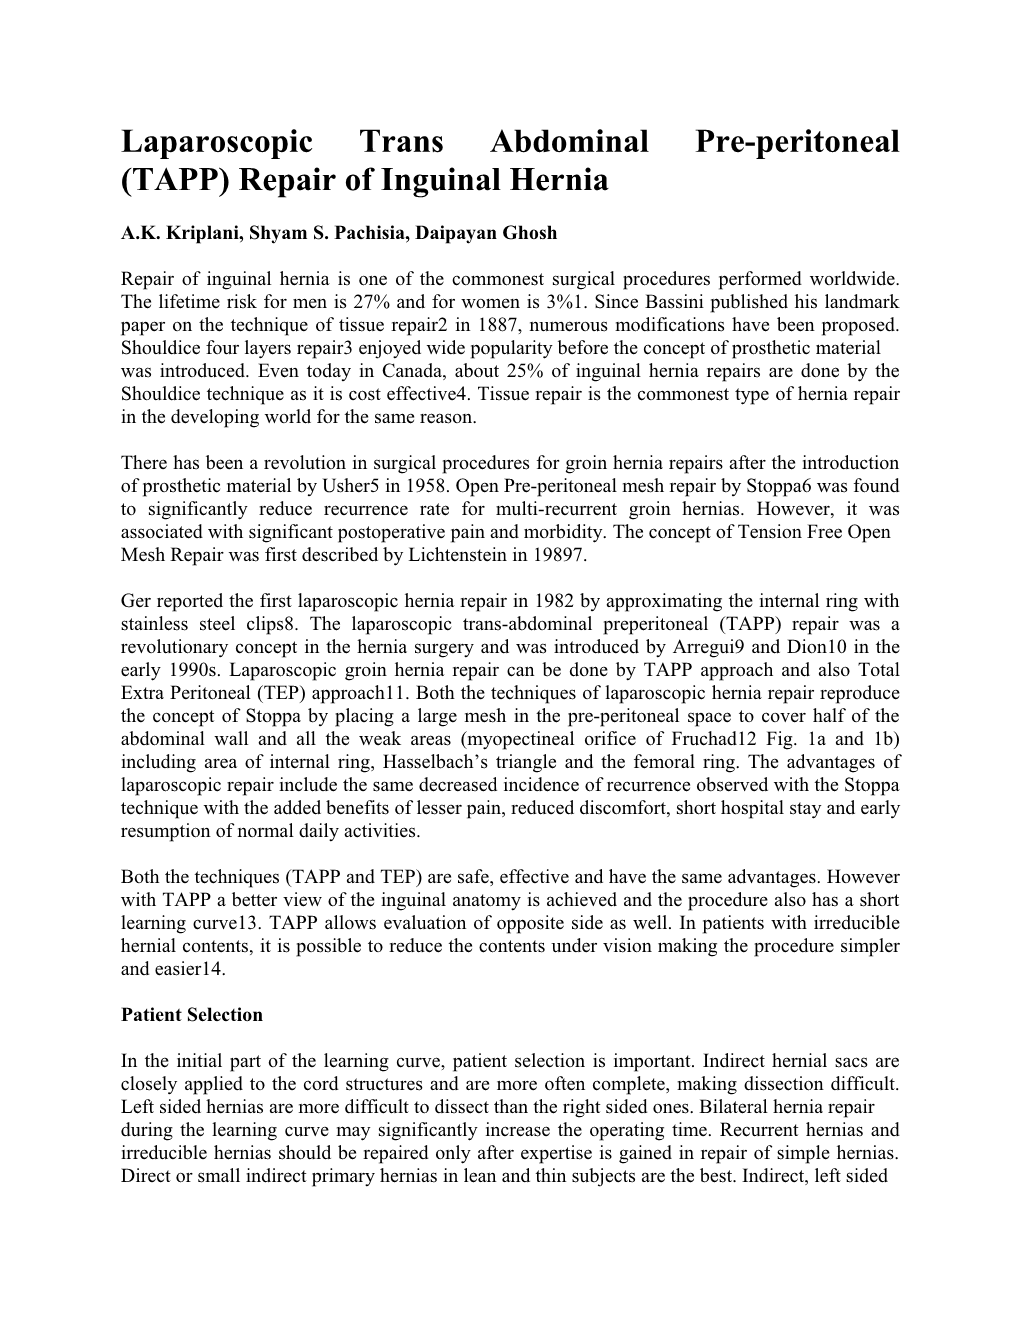 Laparoscopic Trans Abdominal Pre-Peritoneal (TAPP) Repair of Inguinal Hernia